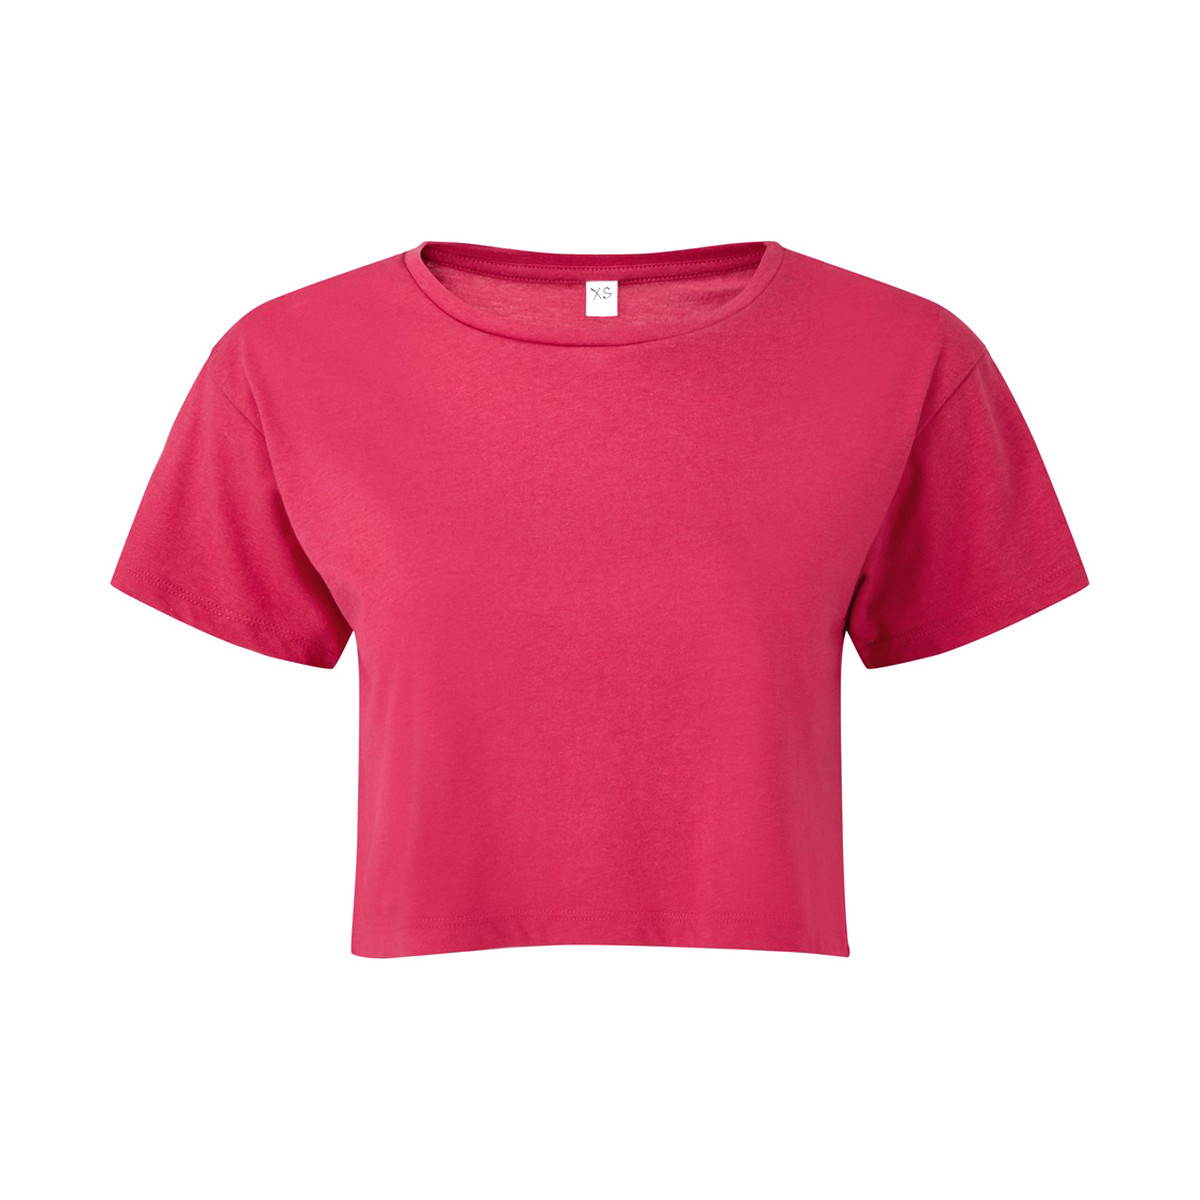 Abbigliamento Donna T-shirts a maniche lunghe Tridri TR019 Rosso